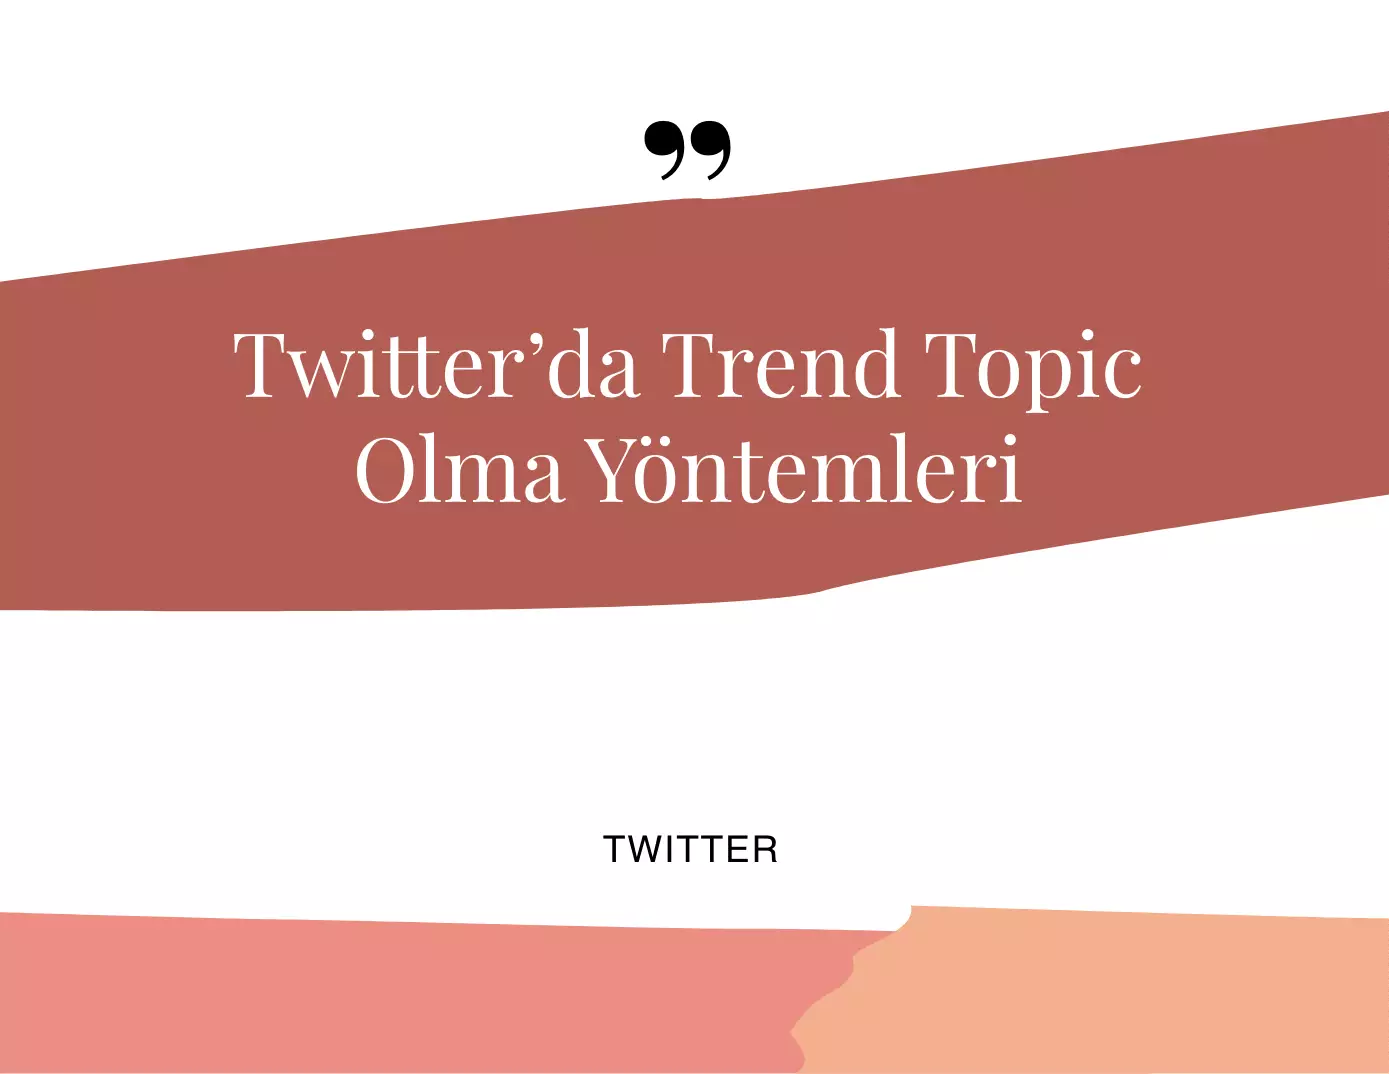 Twitter'da Trend Topic Olma Yöntemleri